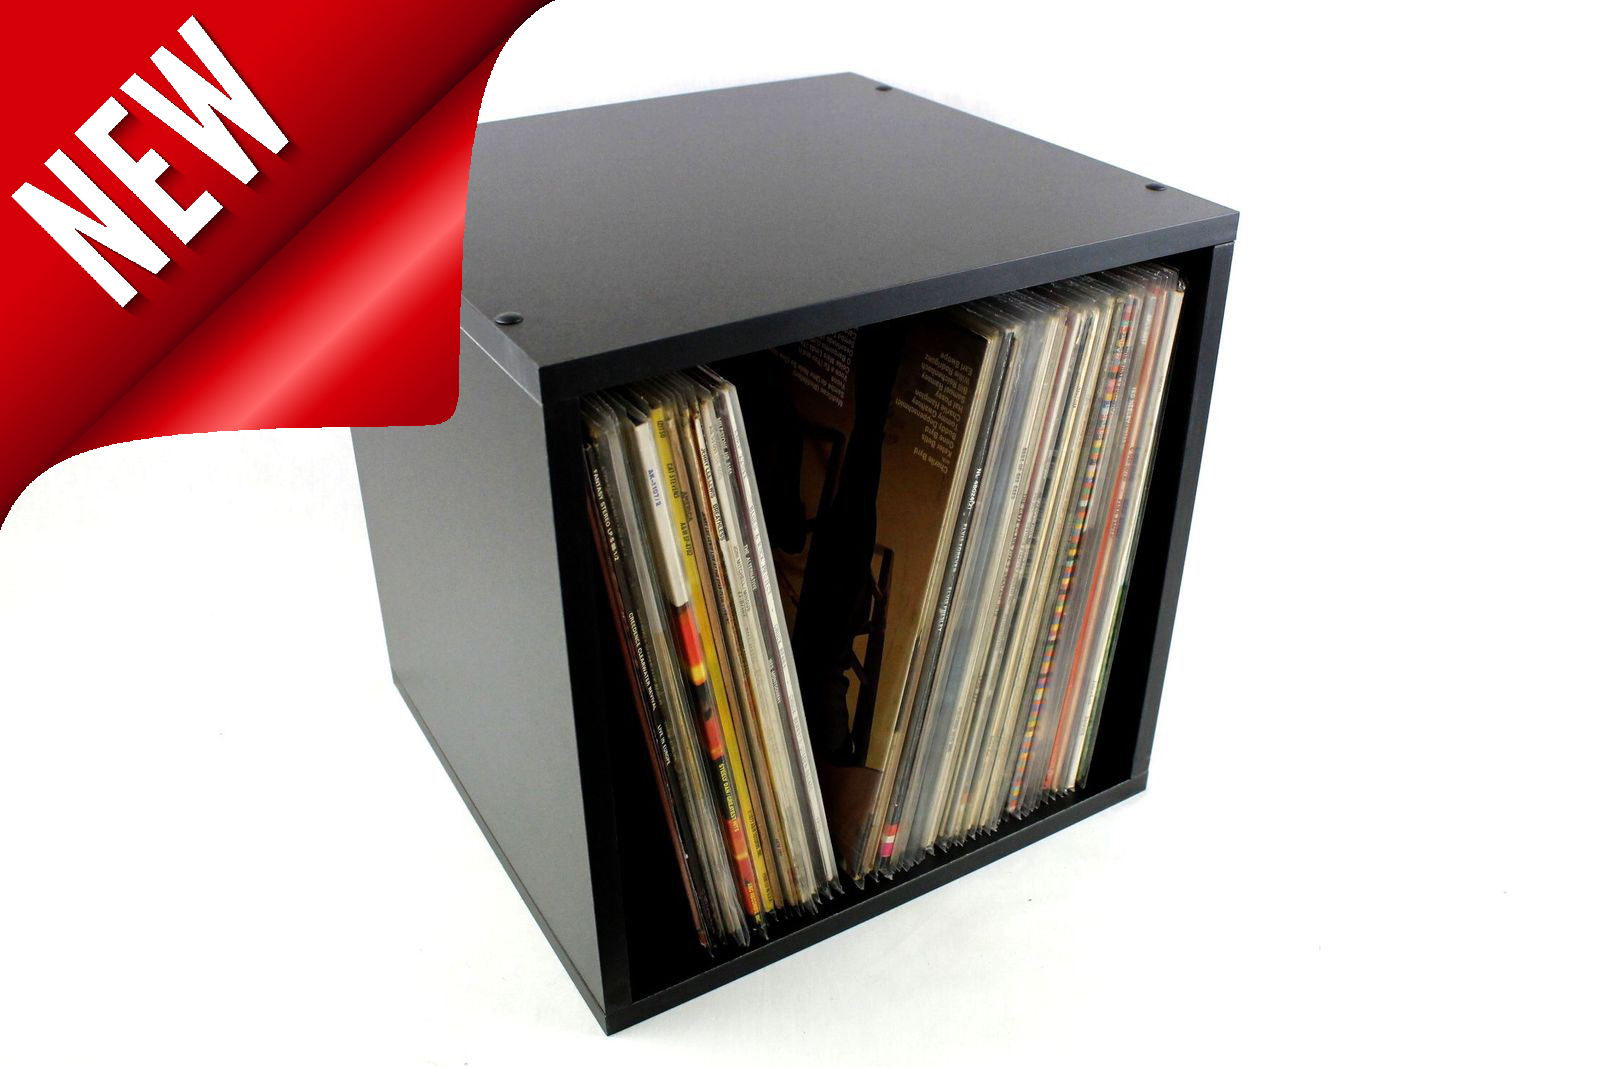 Mobile espositore in legno MDF nero corrugato per 70-90 dischi LP 33 giri